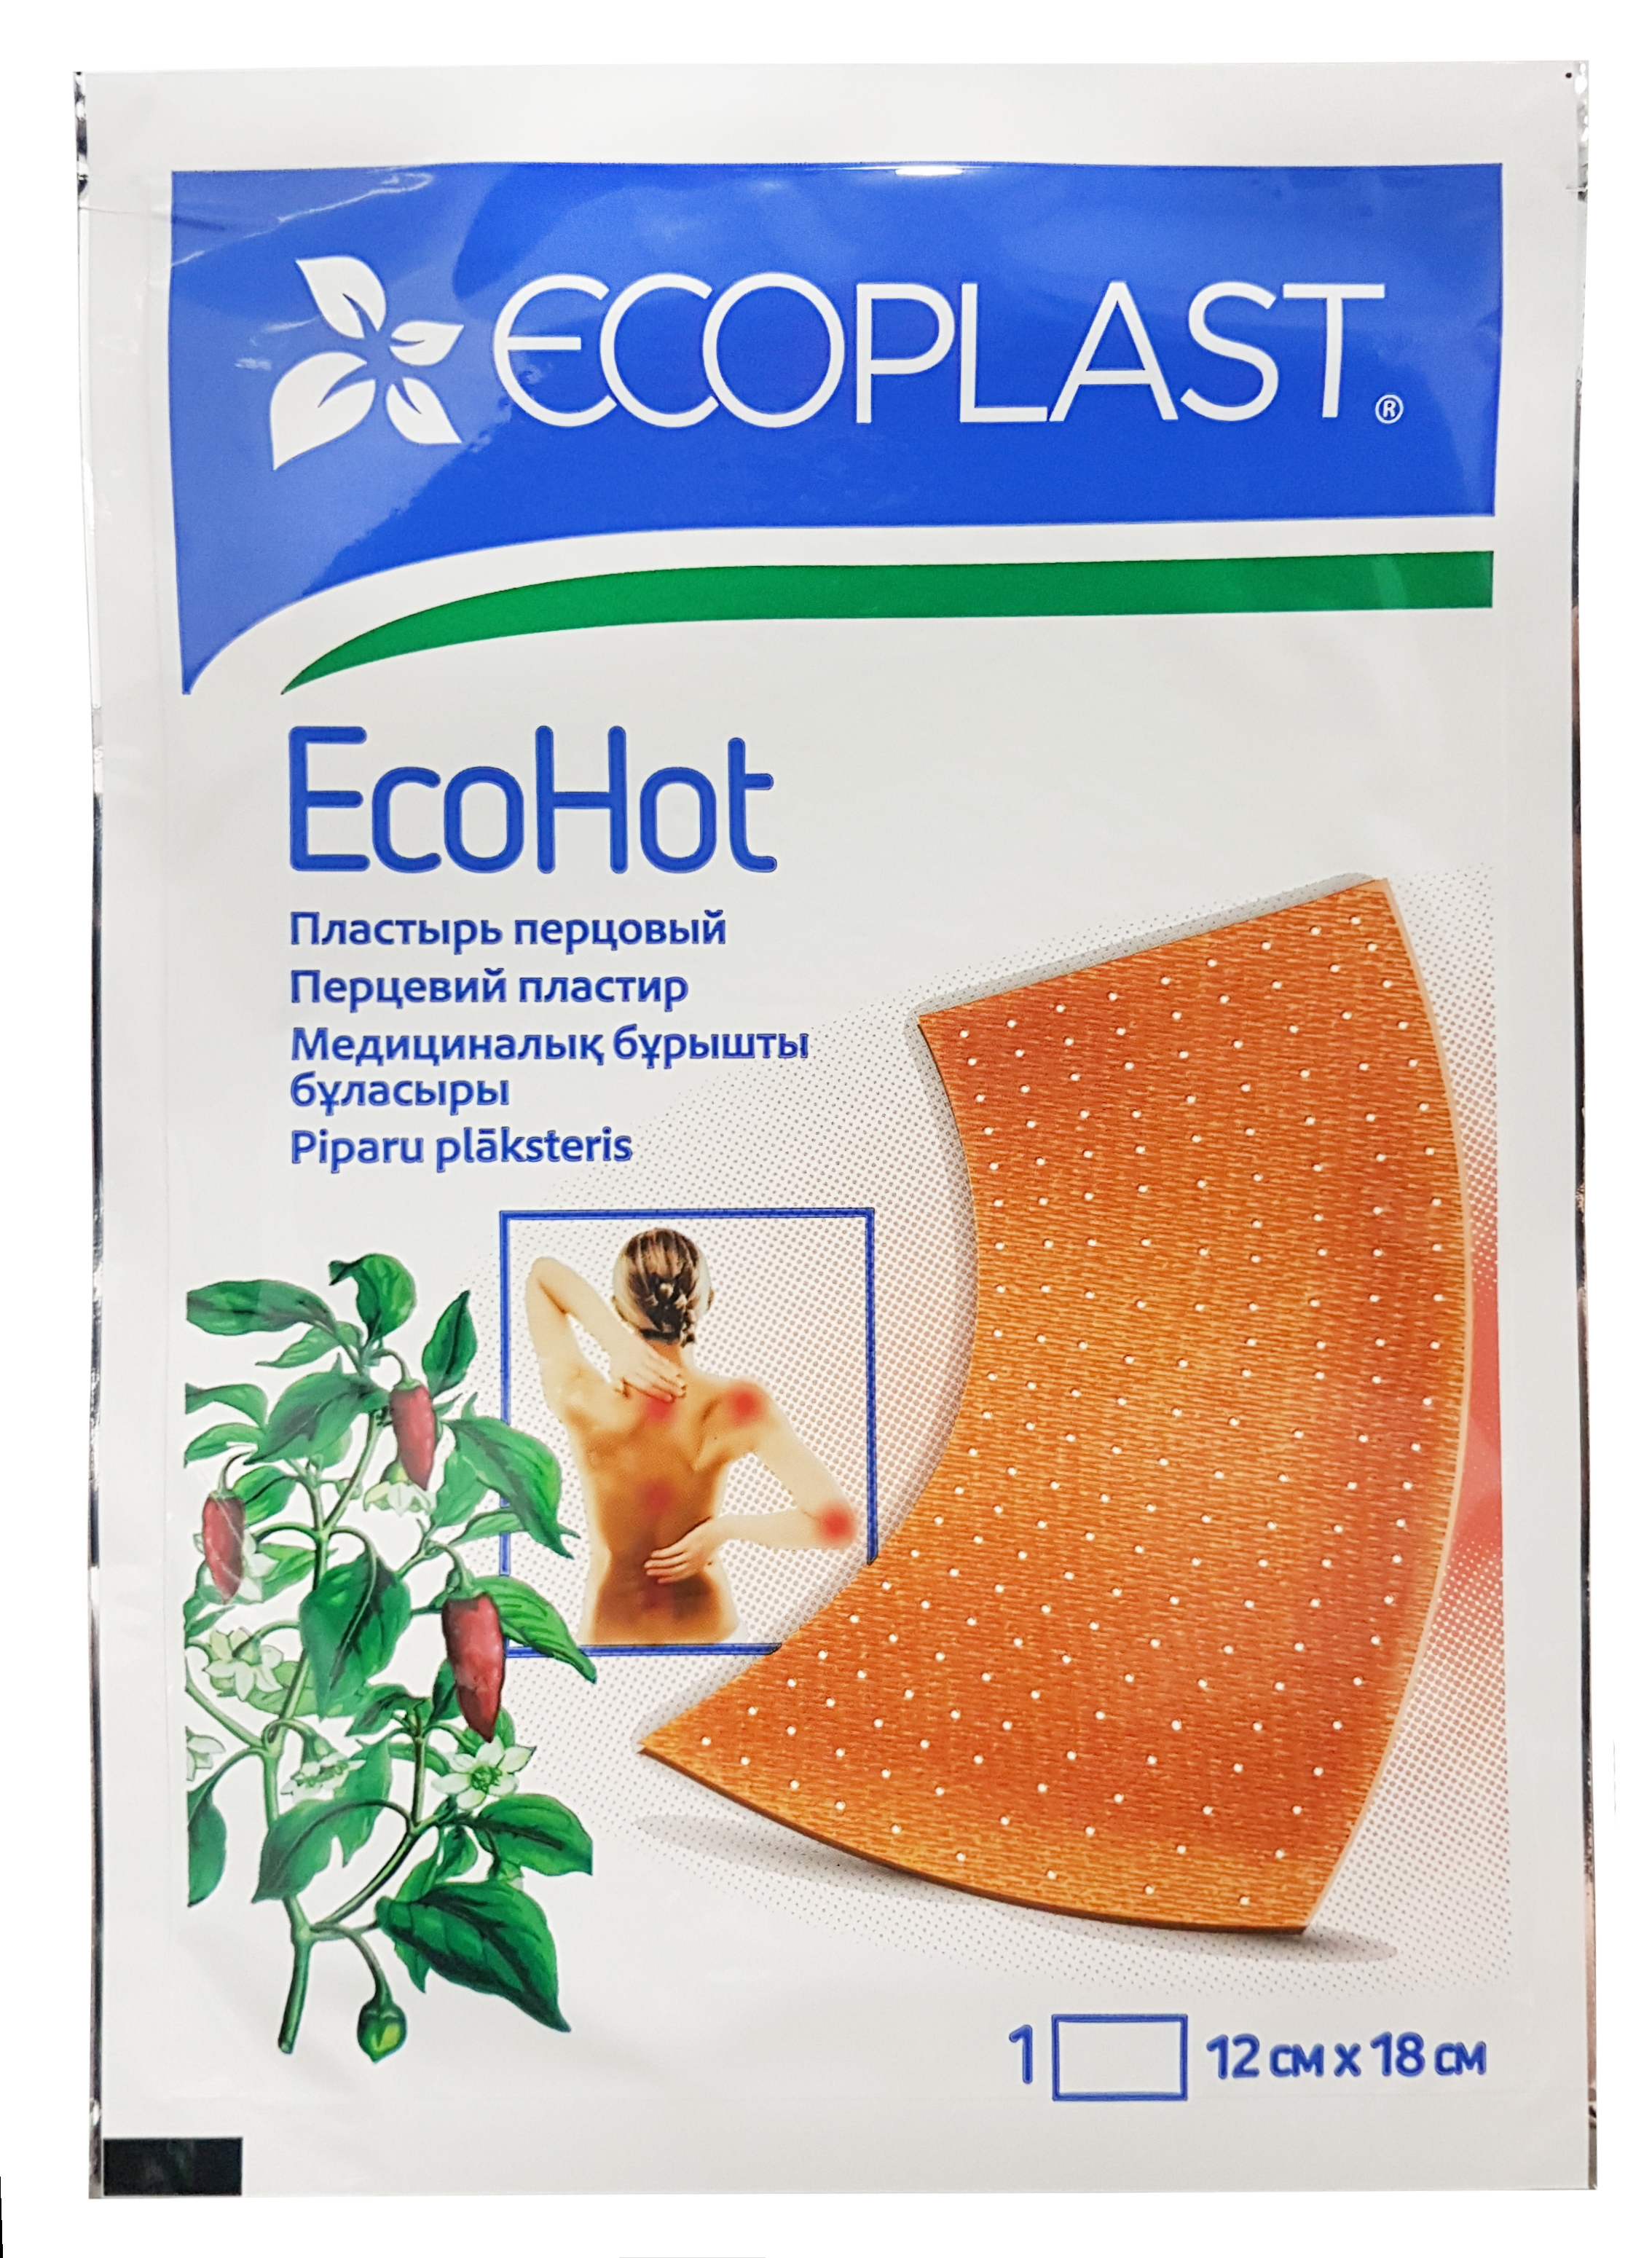 Купить Пластырь медицинский перцовый EcoHot 12x18 см., Ecoplast